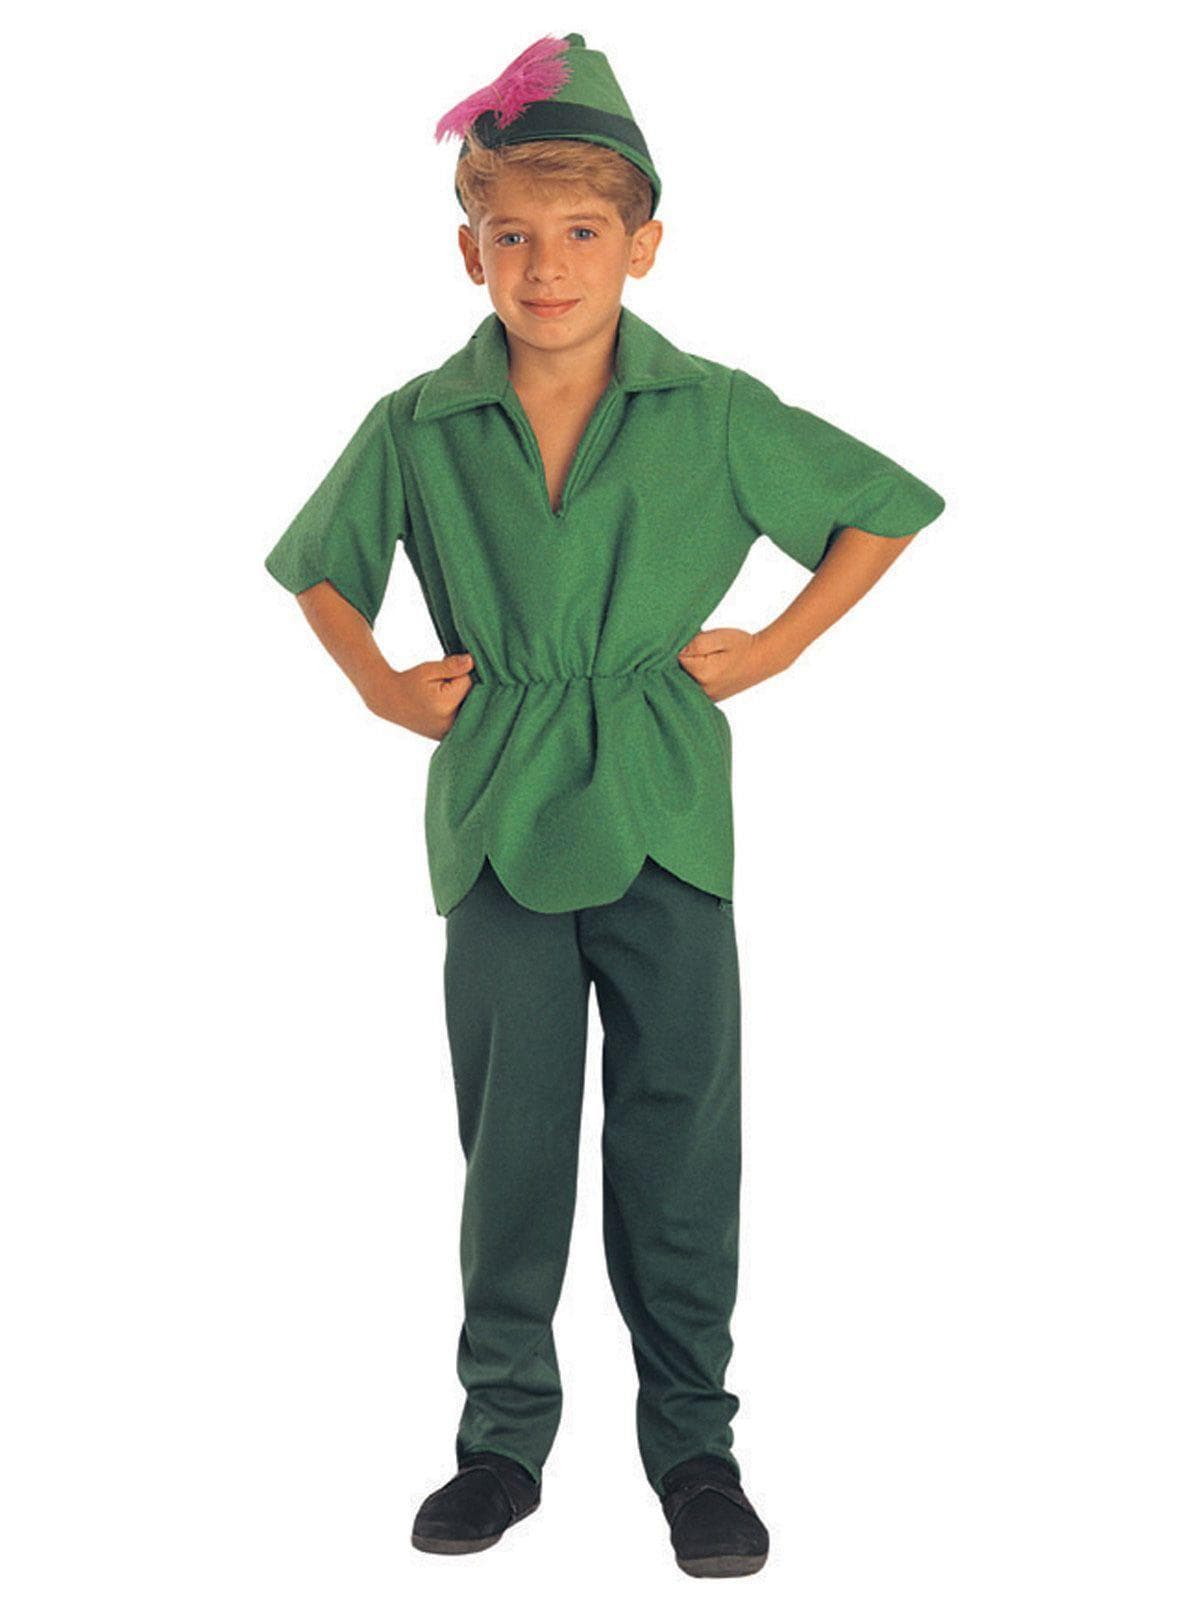 Kids Robin Hood Costume - costumes.com